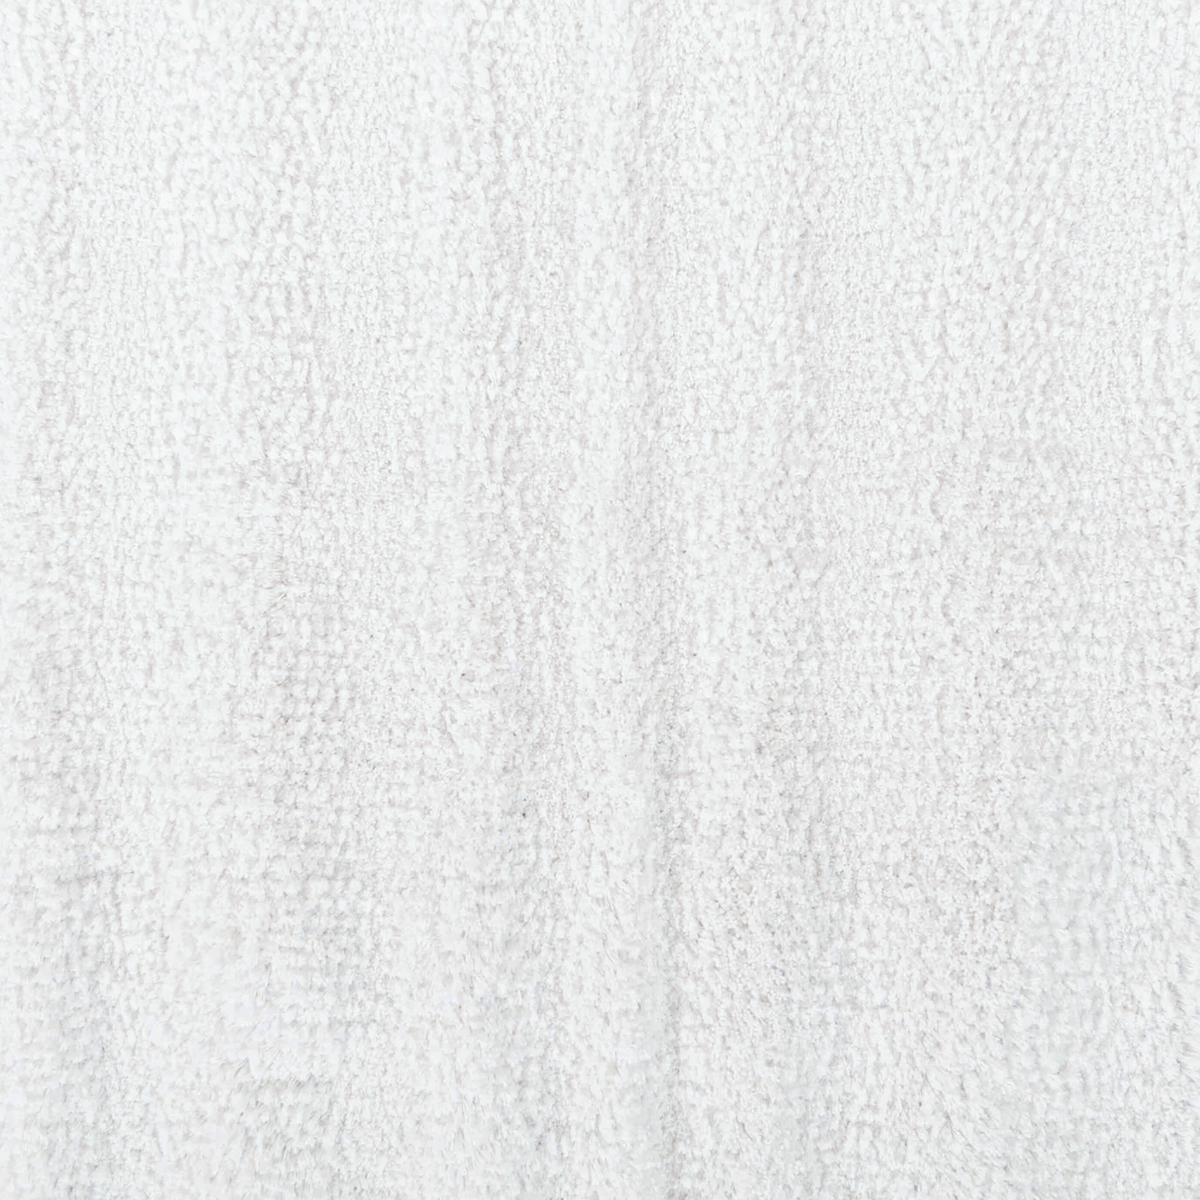 Fabric Closeup of White Graccioza Alentejo Bath Rugs